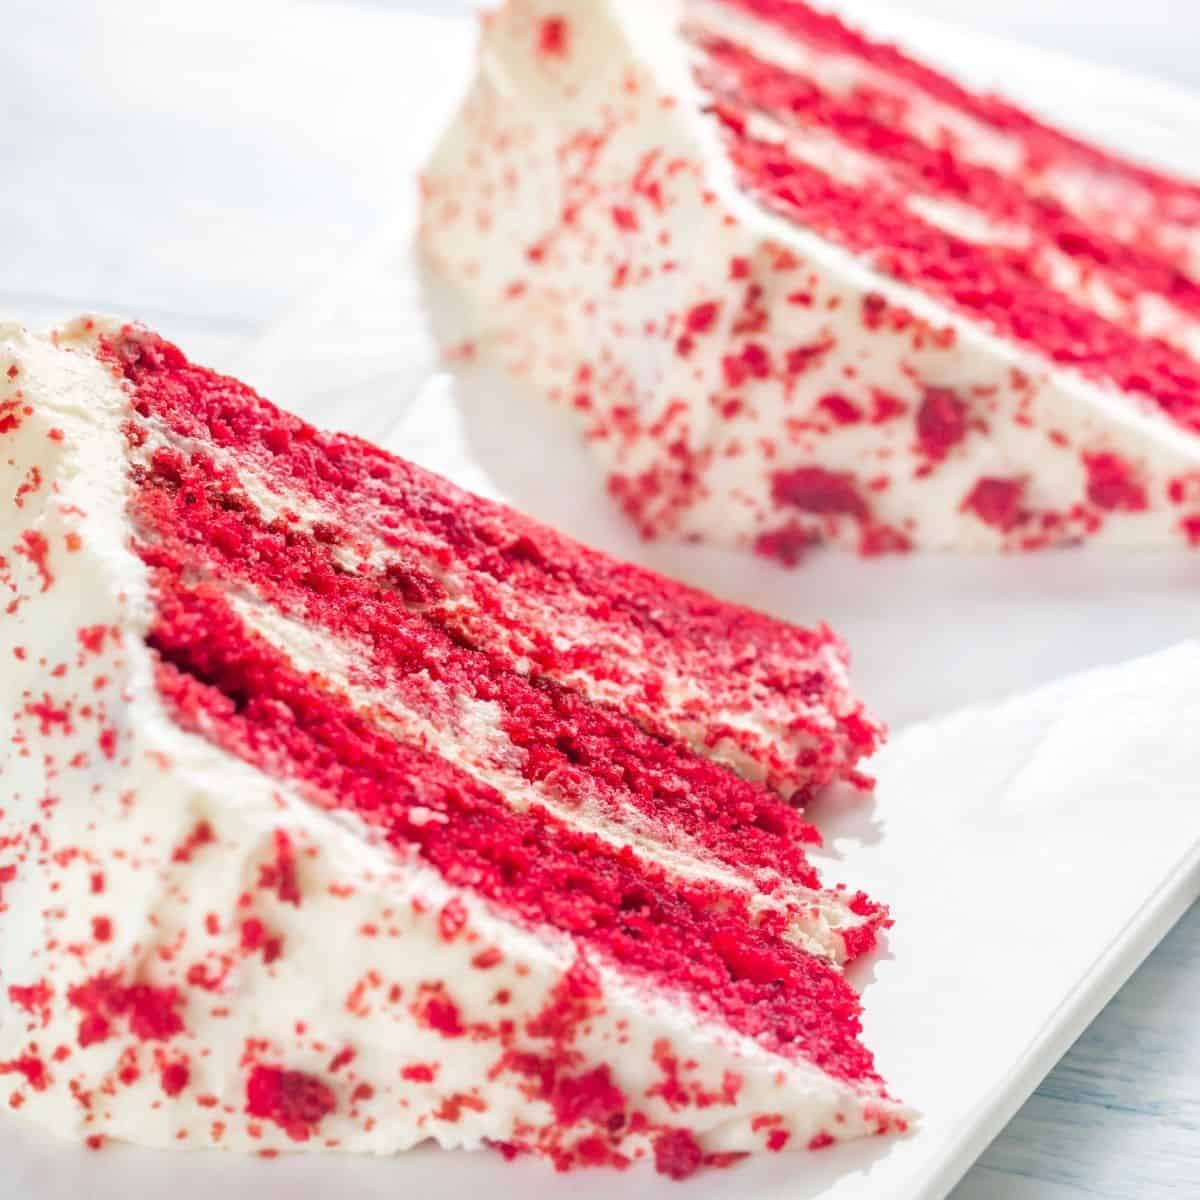 Two slices of vegan red velvet cake on a white plate. 